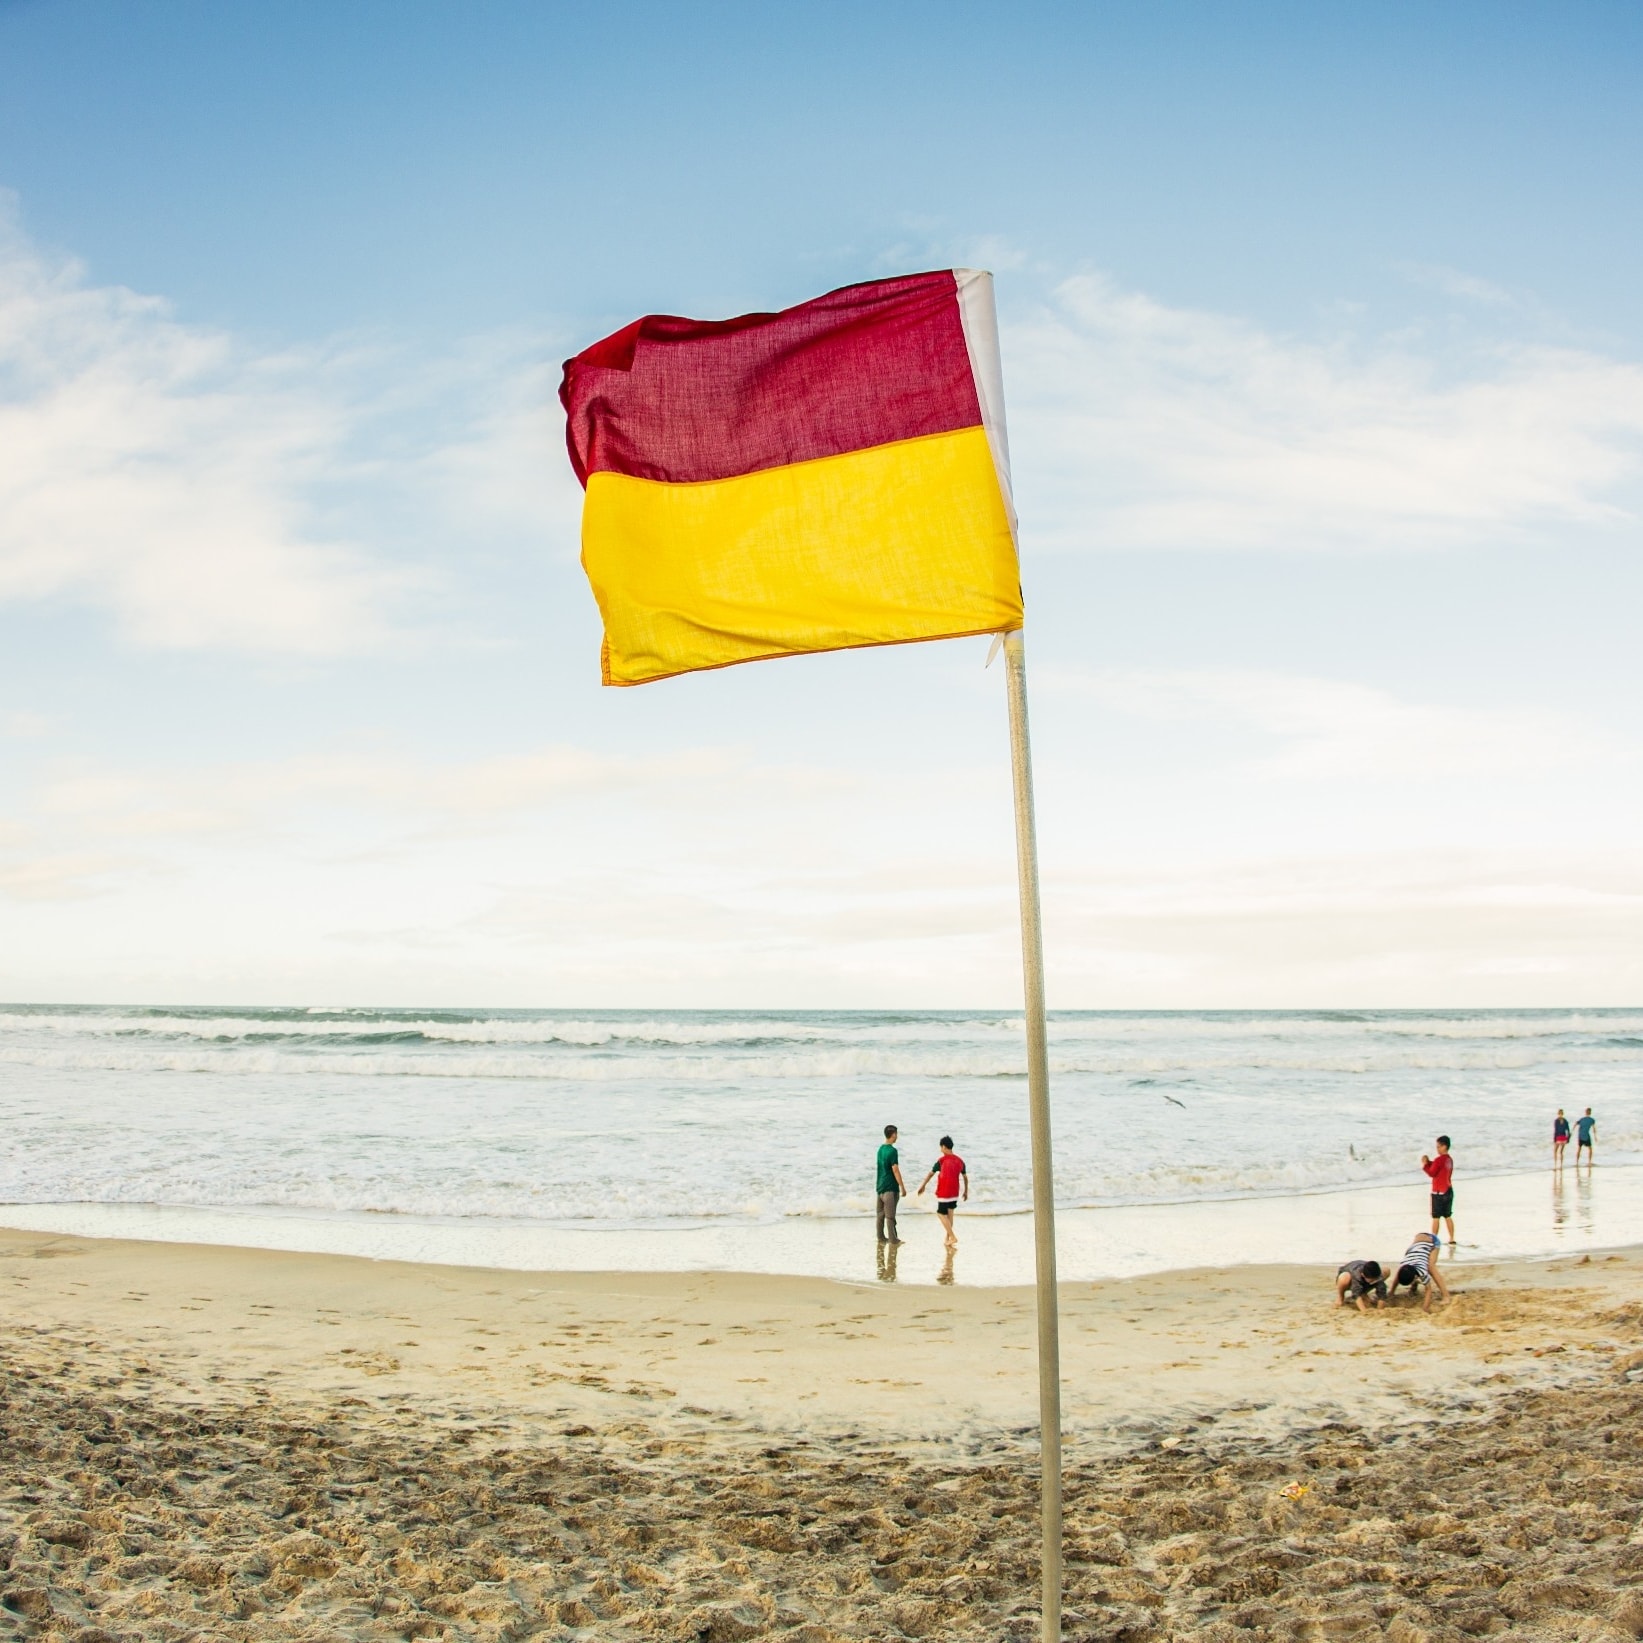 黃金海岸的紅旗與黃旗─澳洲旅遊局